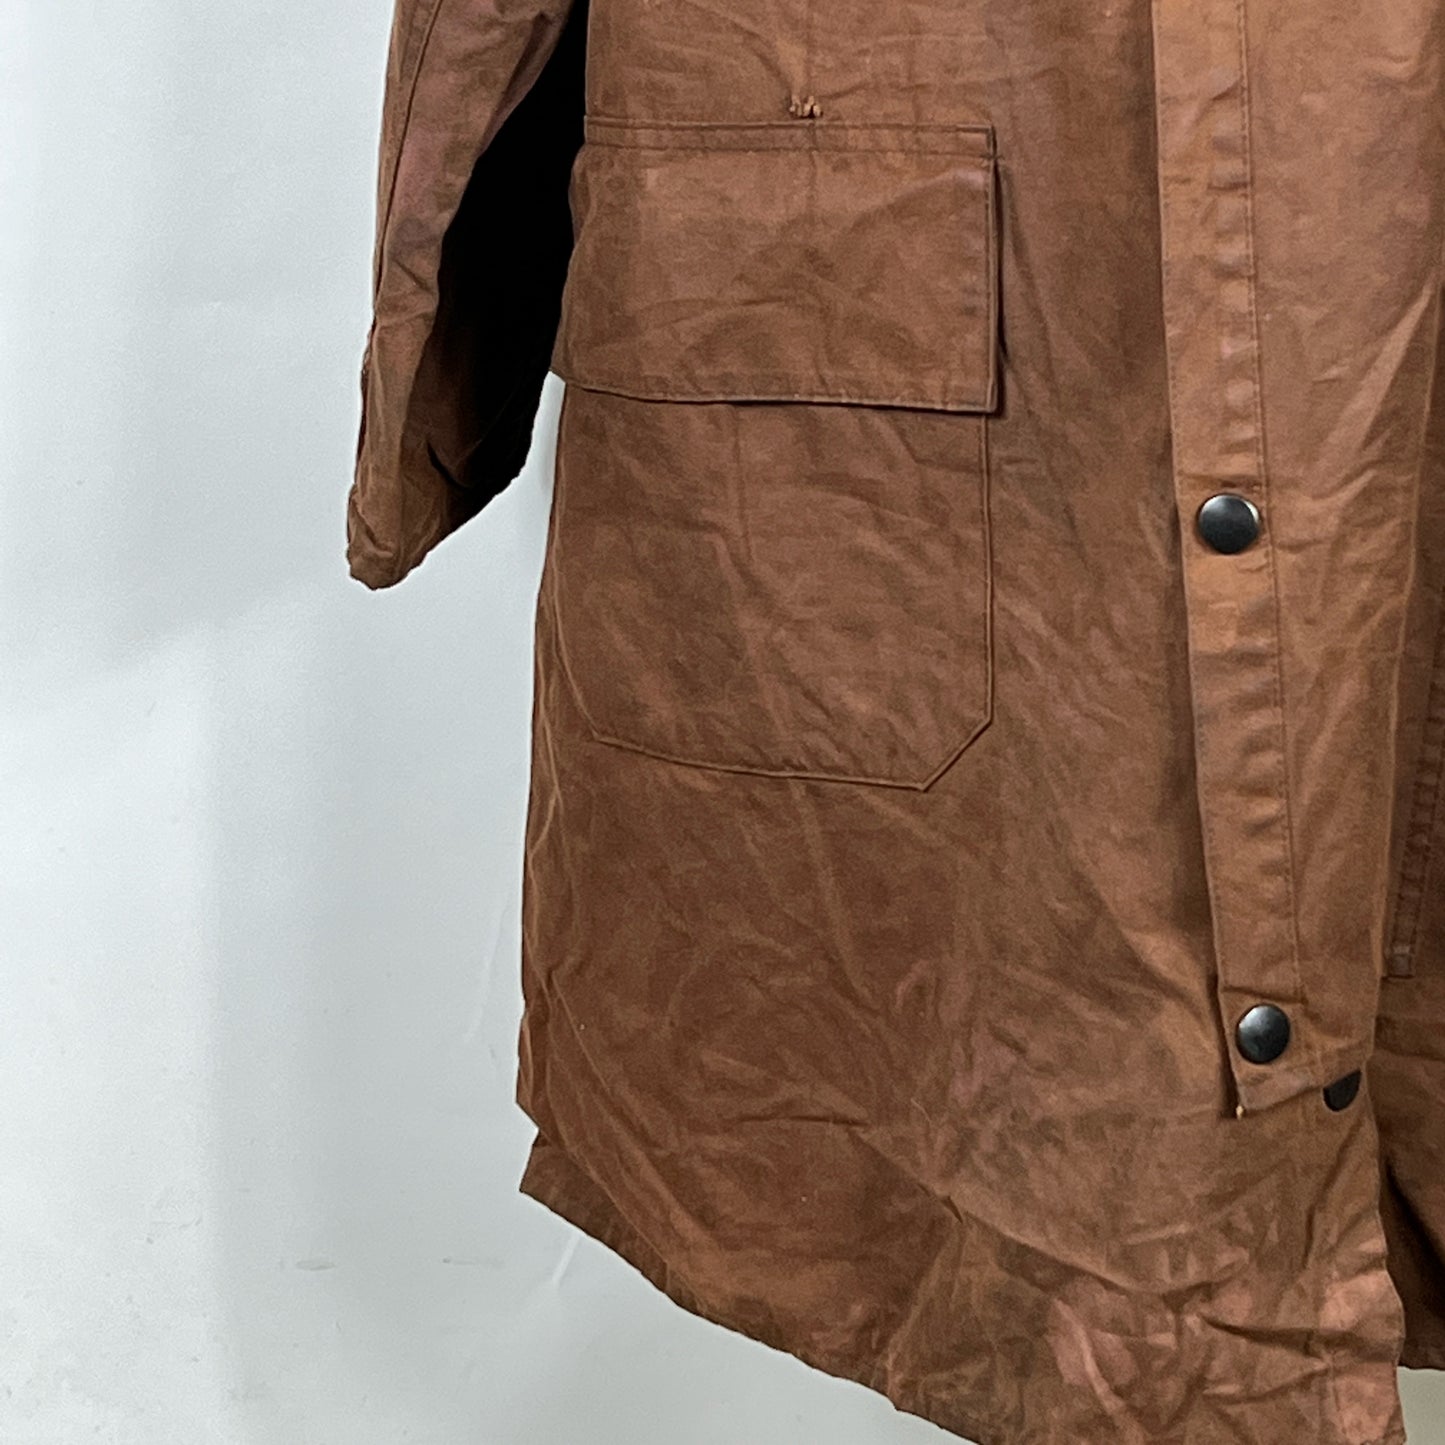 Raro Barbour Backhouse Marrone cerato C40/102cm - Brown Wax Backhouse Jacket size M